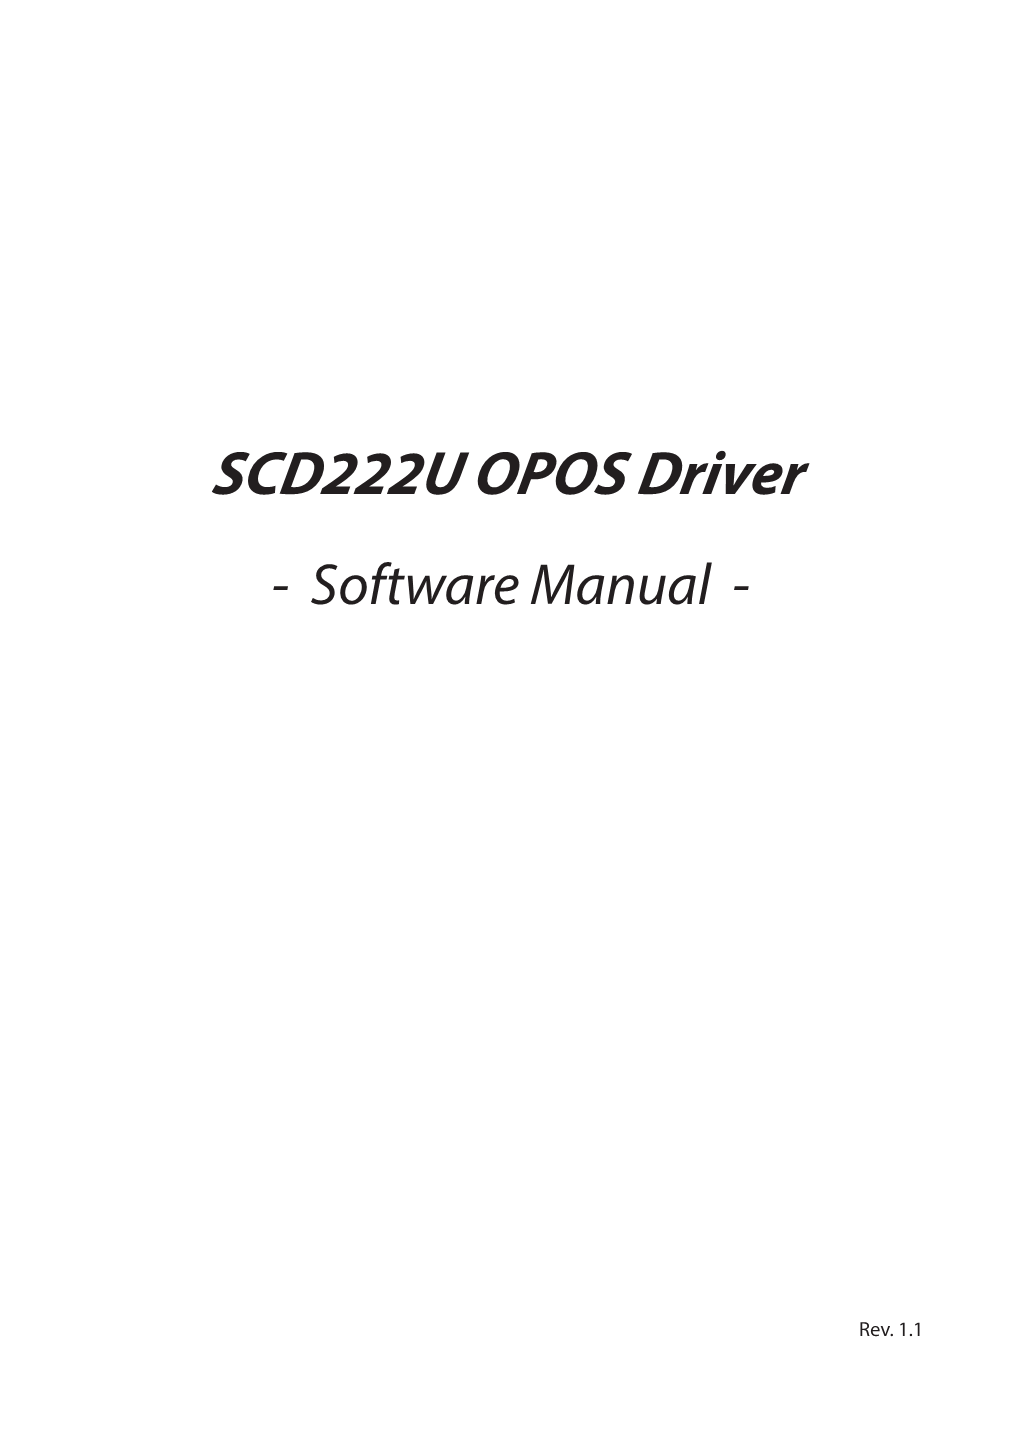 SCD222U OPOS Driver Software Manual